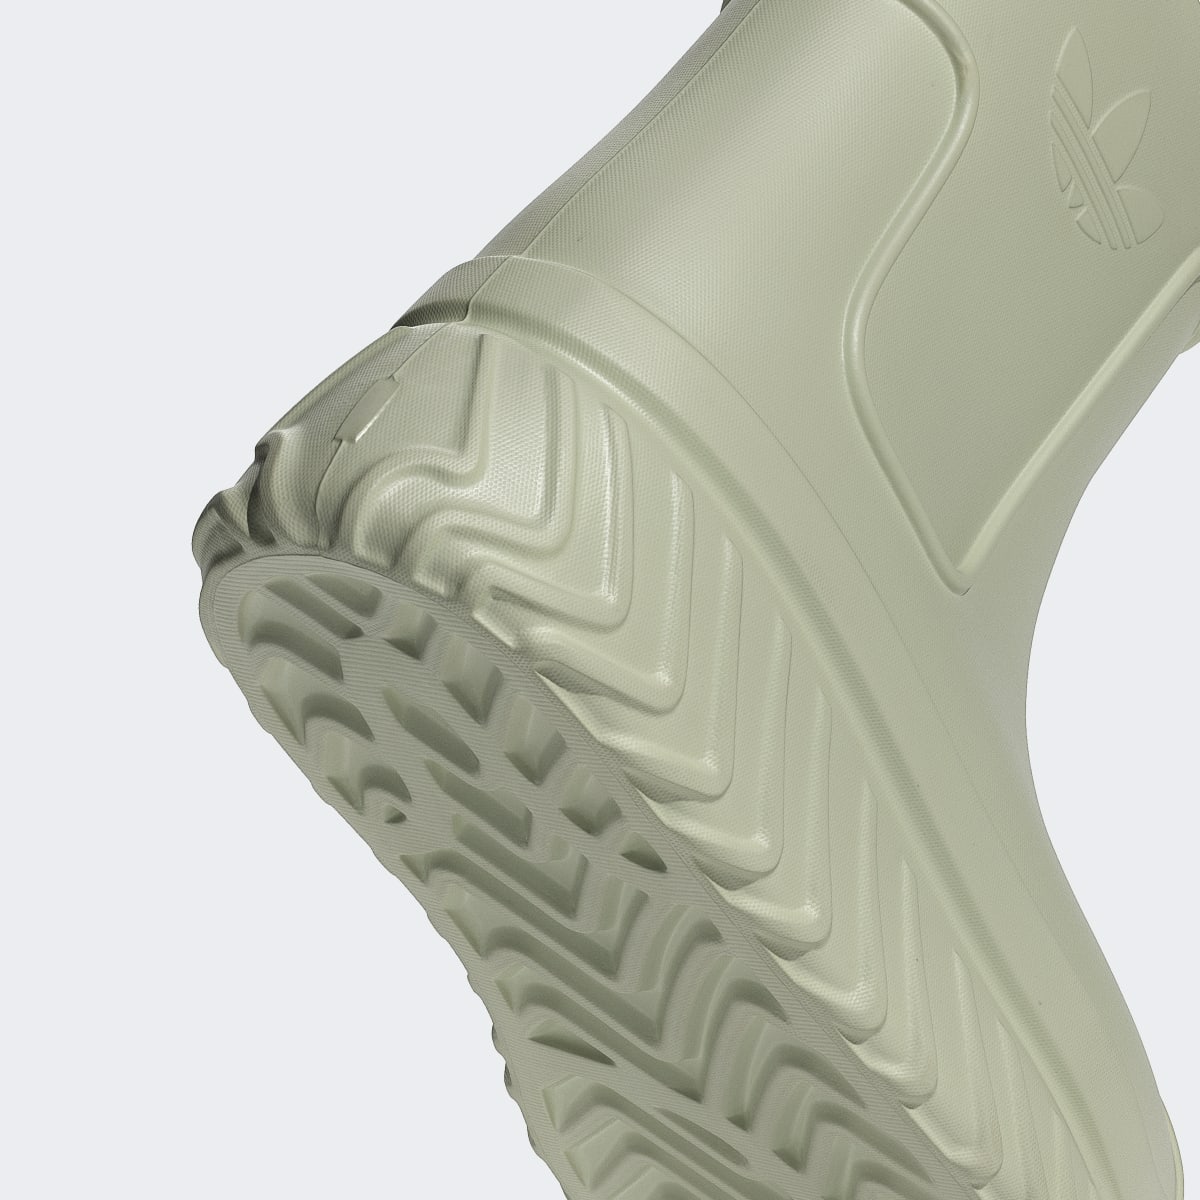 Adidas AdiFOM SST Boot Schuh. 10